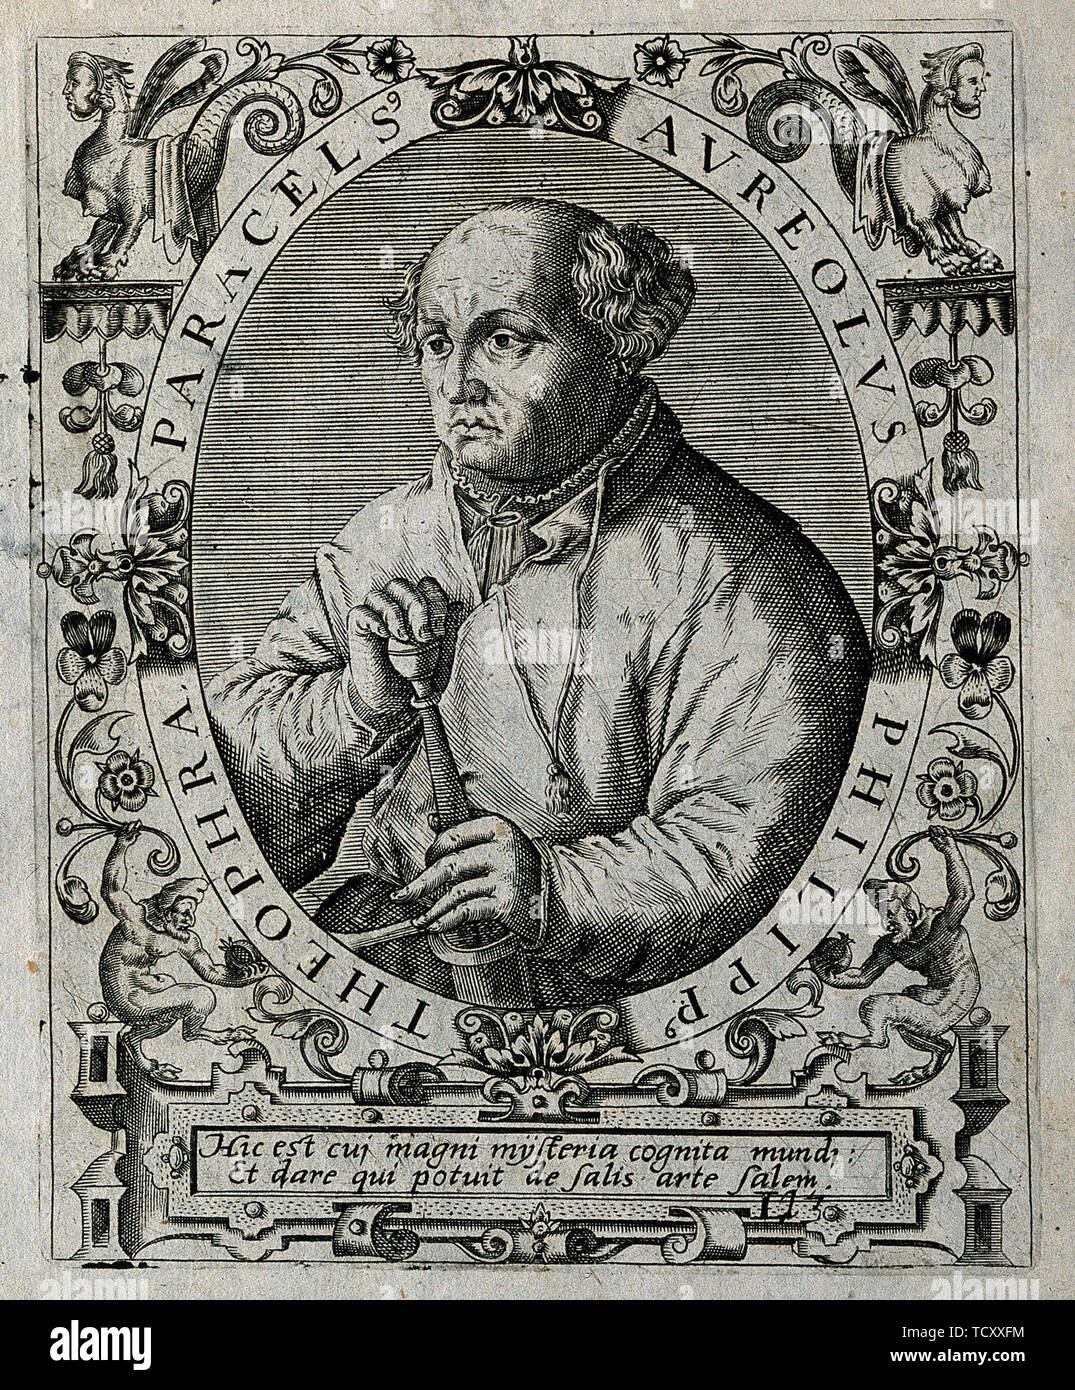 Philippus Theophrastus Aureolus Bombastus von Hohenheim (Paracelsus), 1645. Creator: Bry, Theodor de (1528-1598). Stock Photo